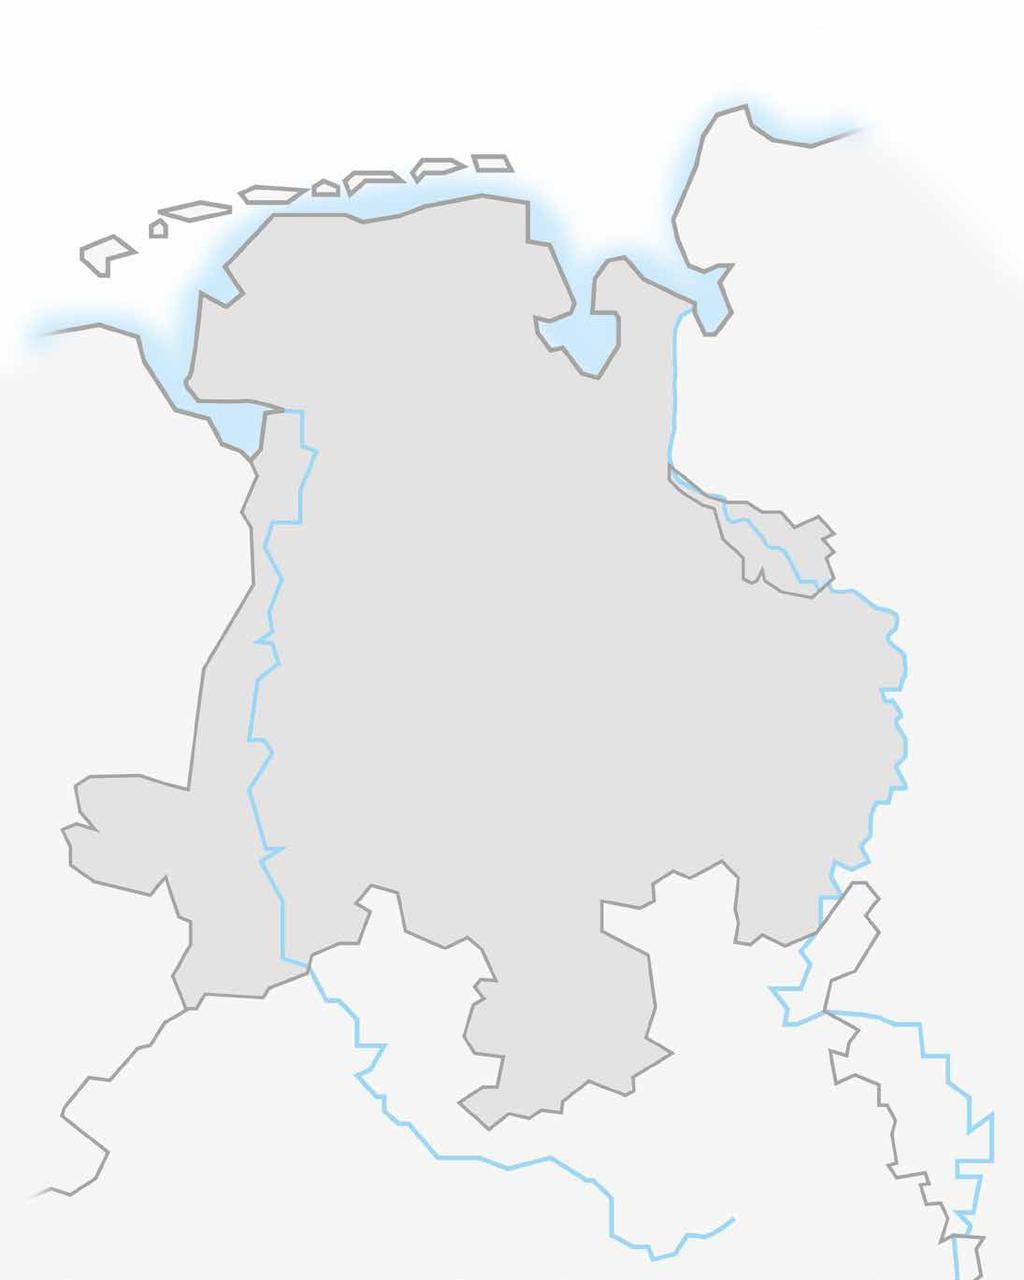 IMMOBILIENBÖRSE Weser-Ems Überregionale Präsenz. Das Partnernetzwerk mit über 40 Standorten.